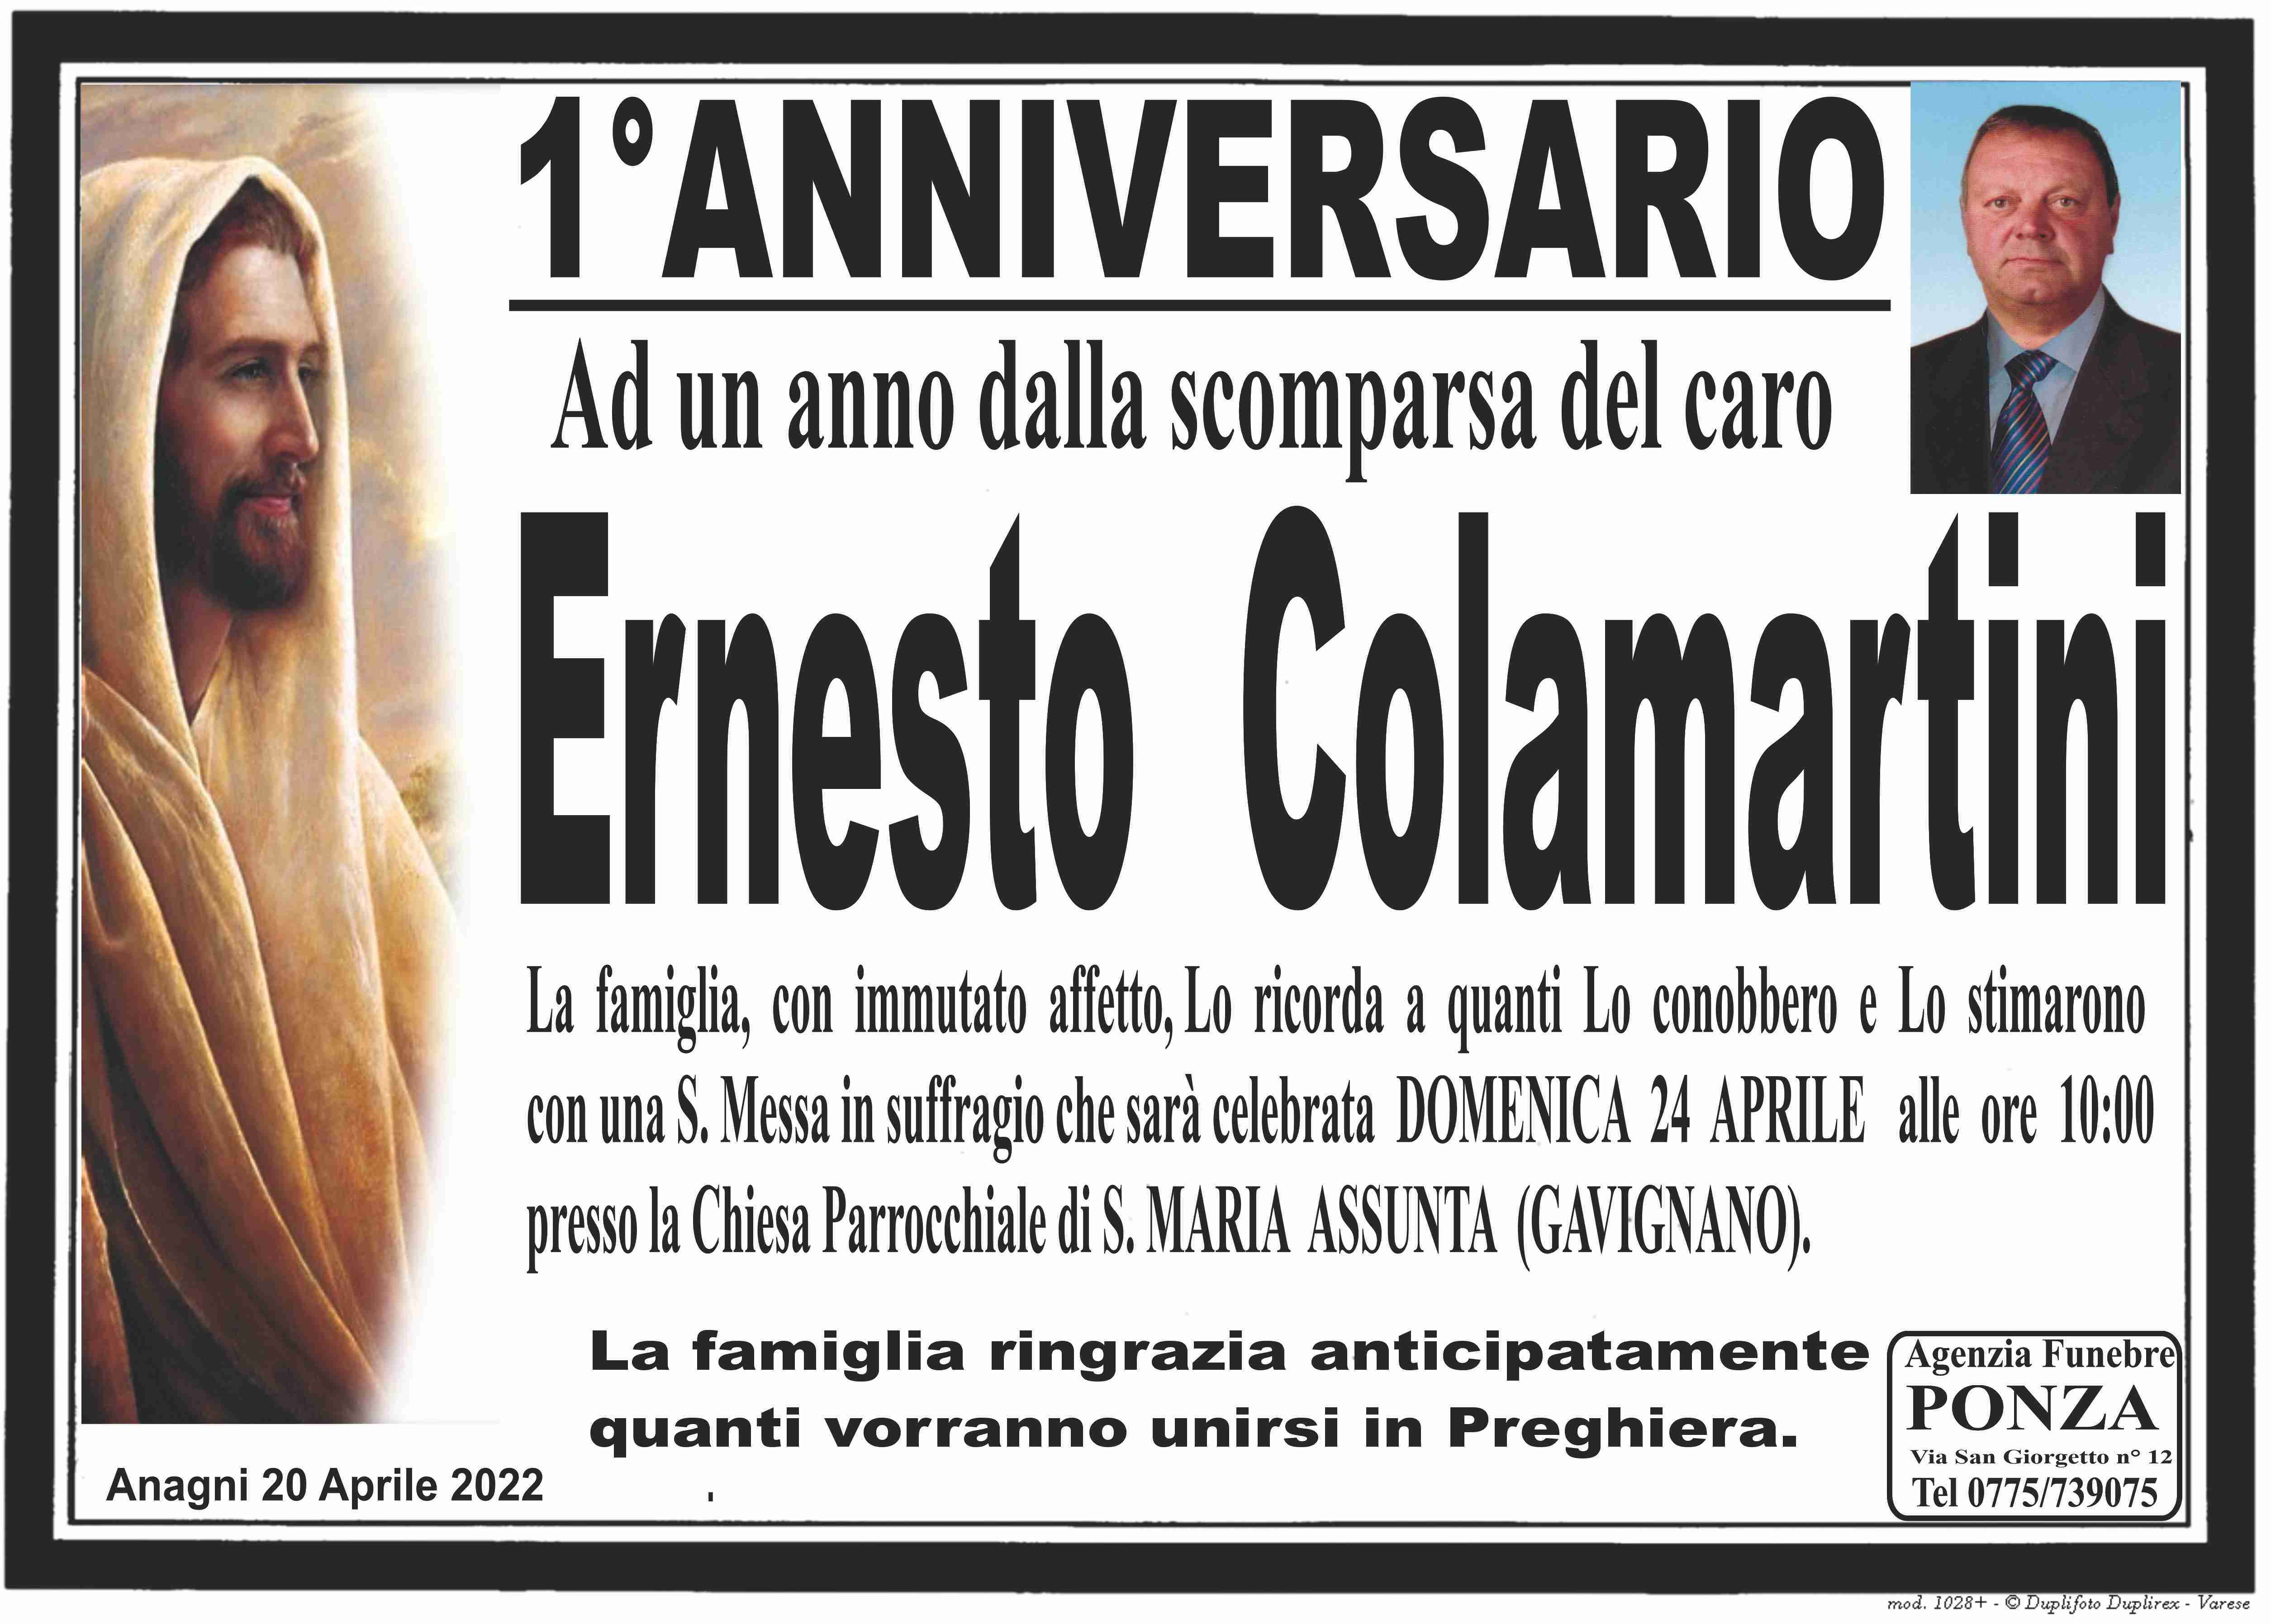 Ernesto Colamartini